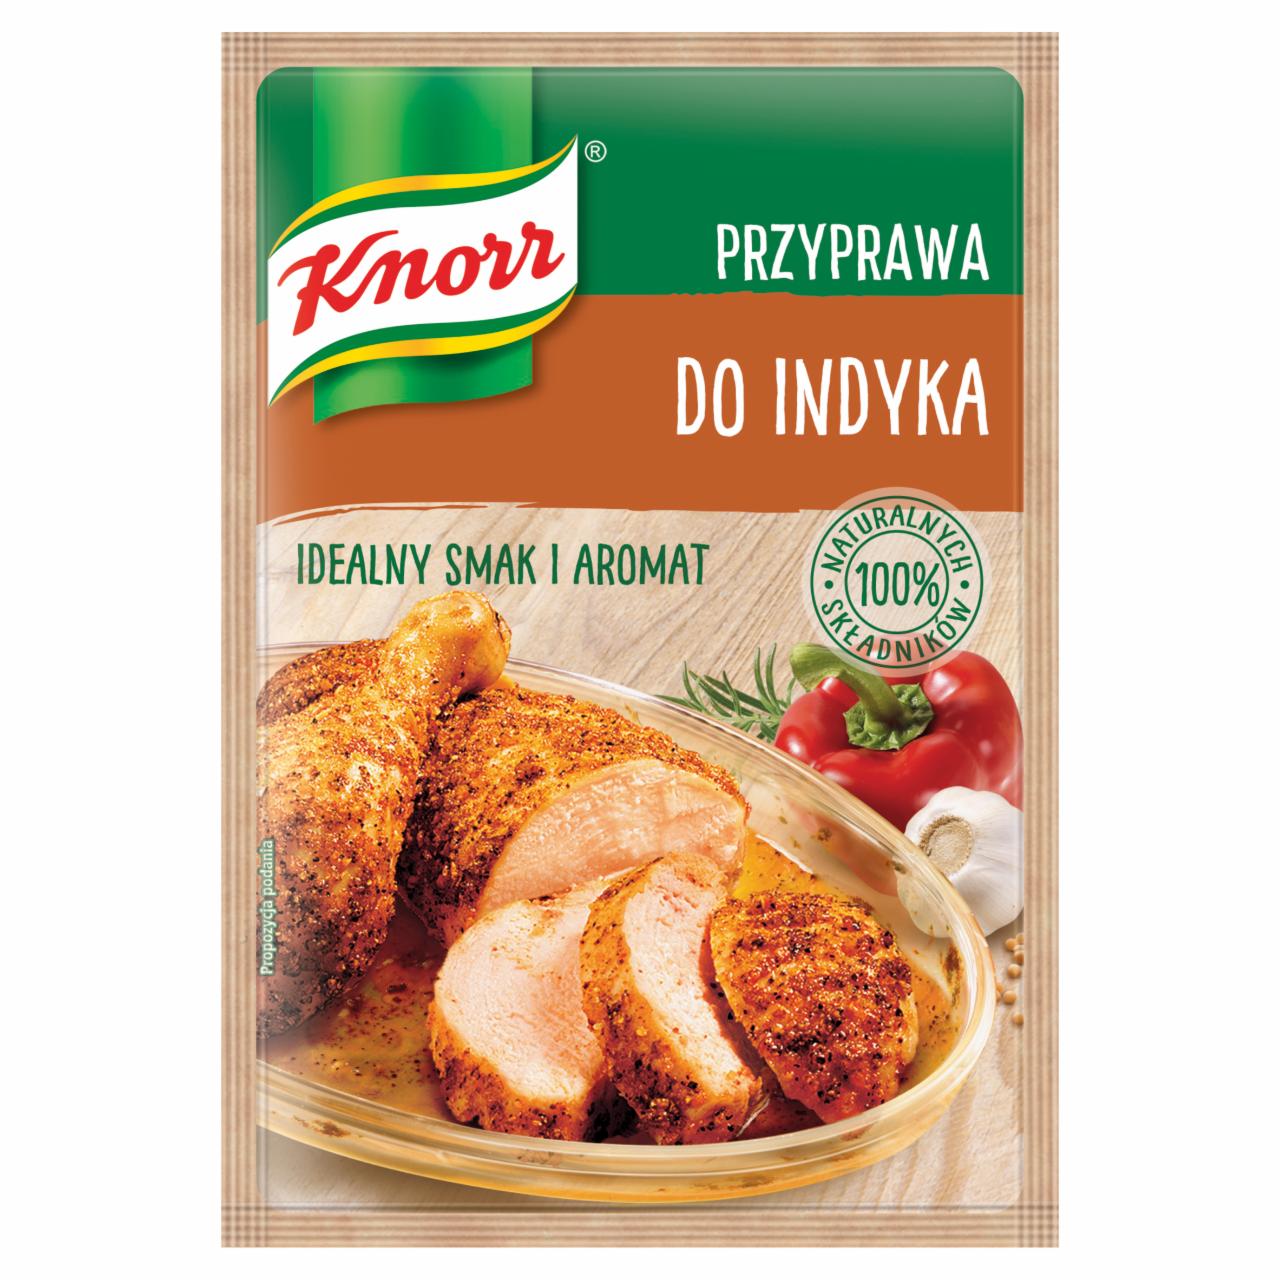 Zdjęcia - Knorr Przyprawa do indyka 23 g